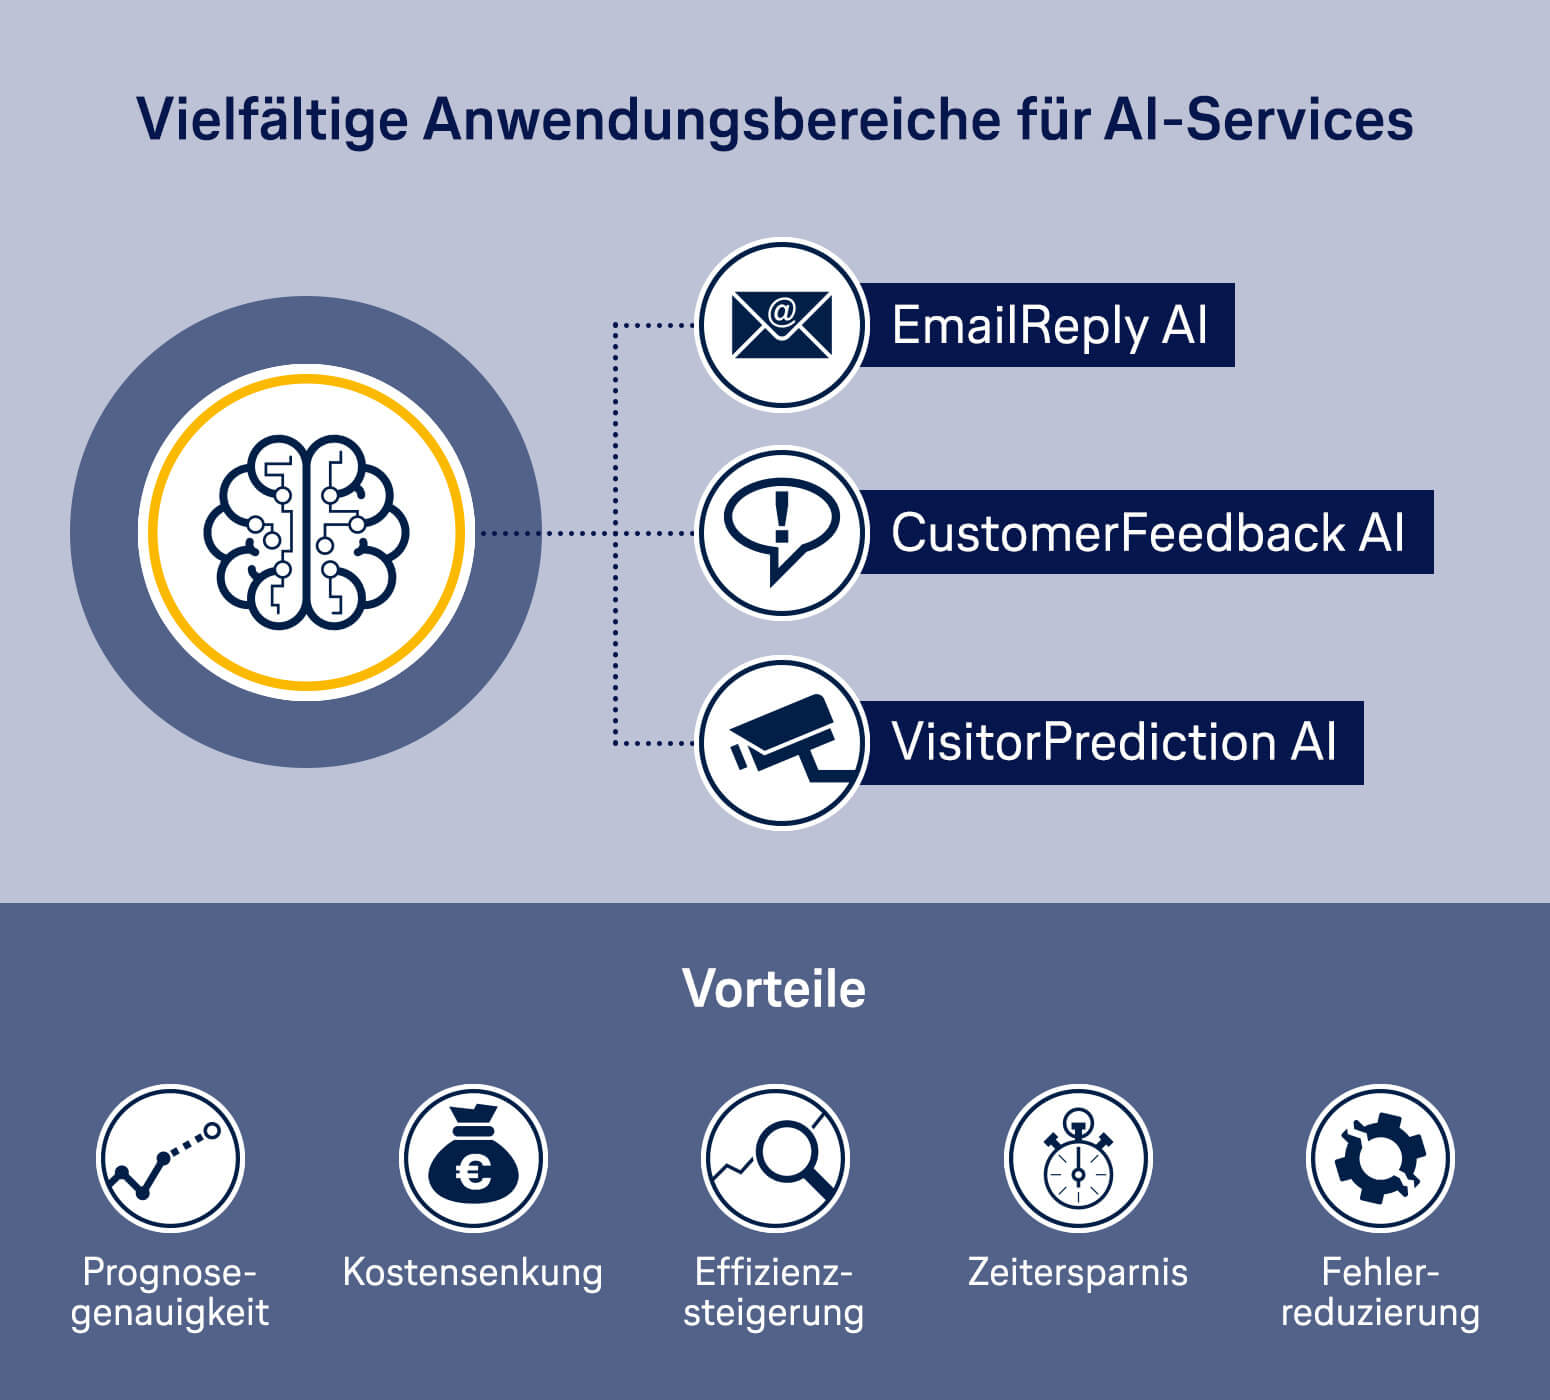 Die Erkundung von Lufthansa Industry Solutions im Bereich Artificial Intelligence as a Service (AIaaS)